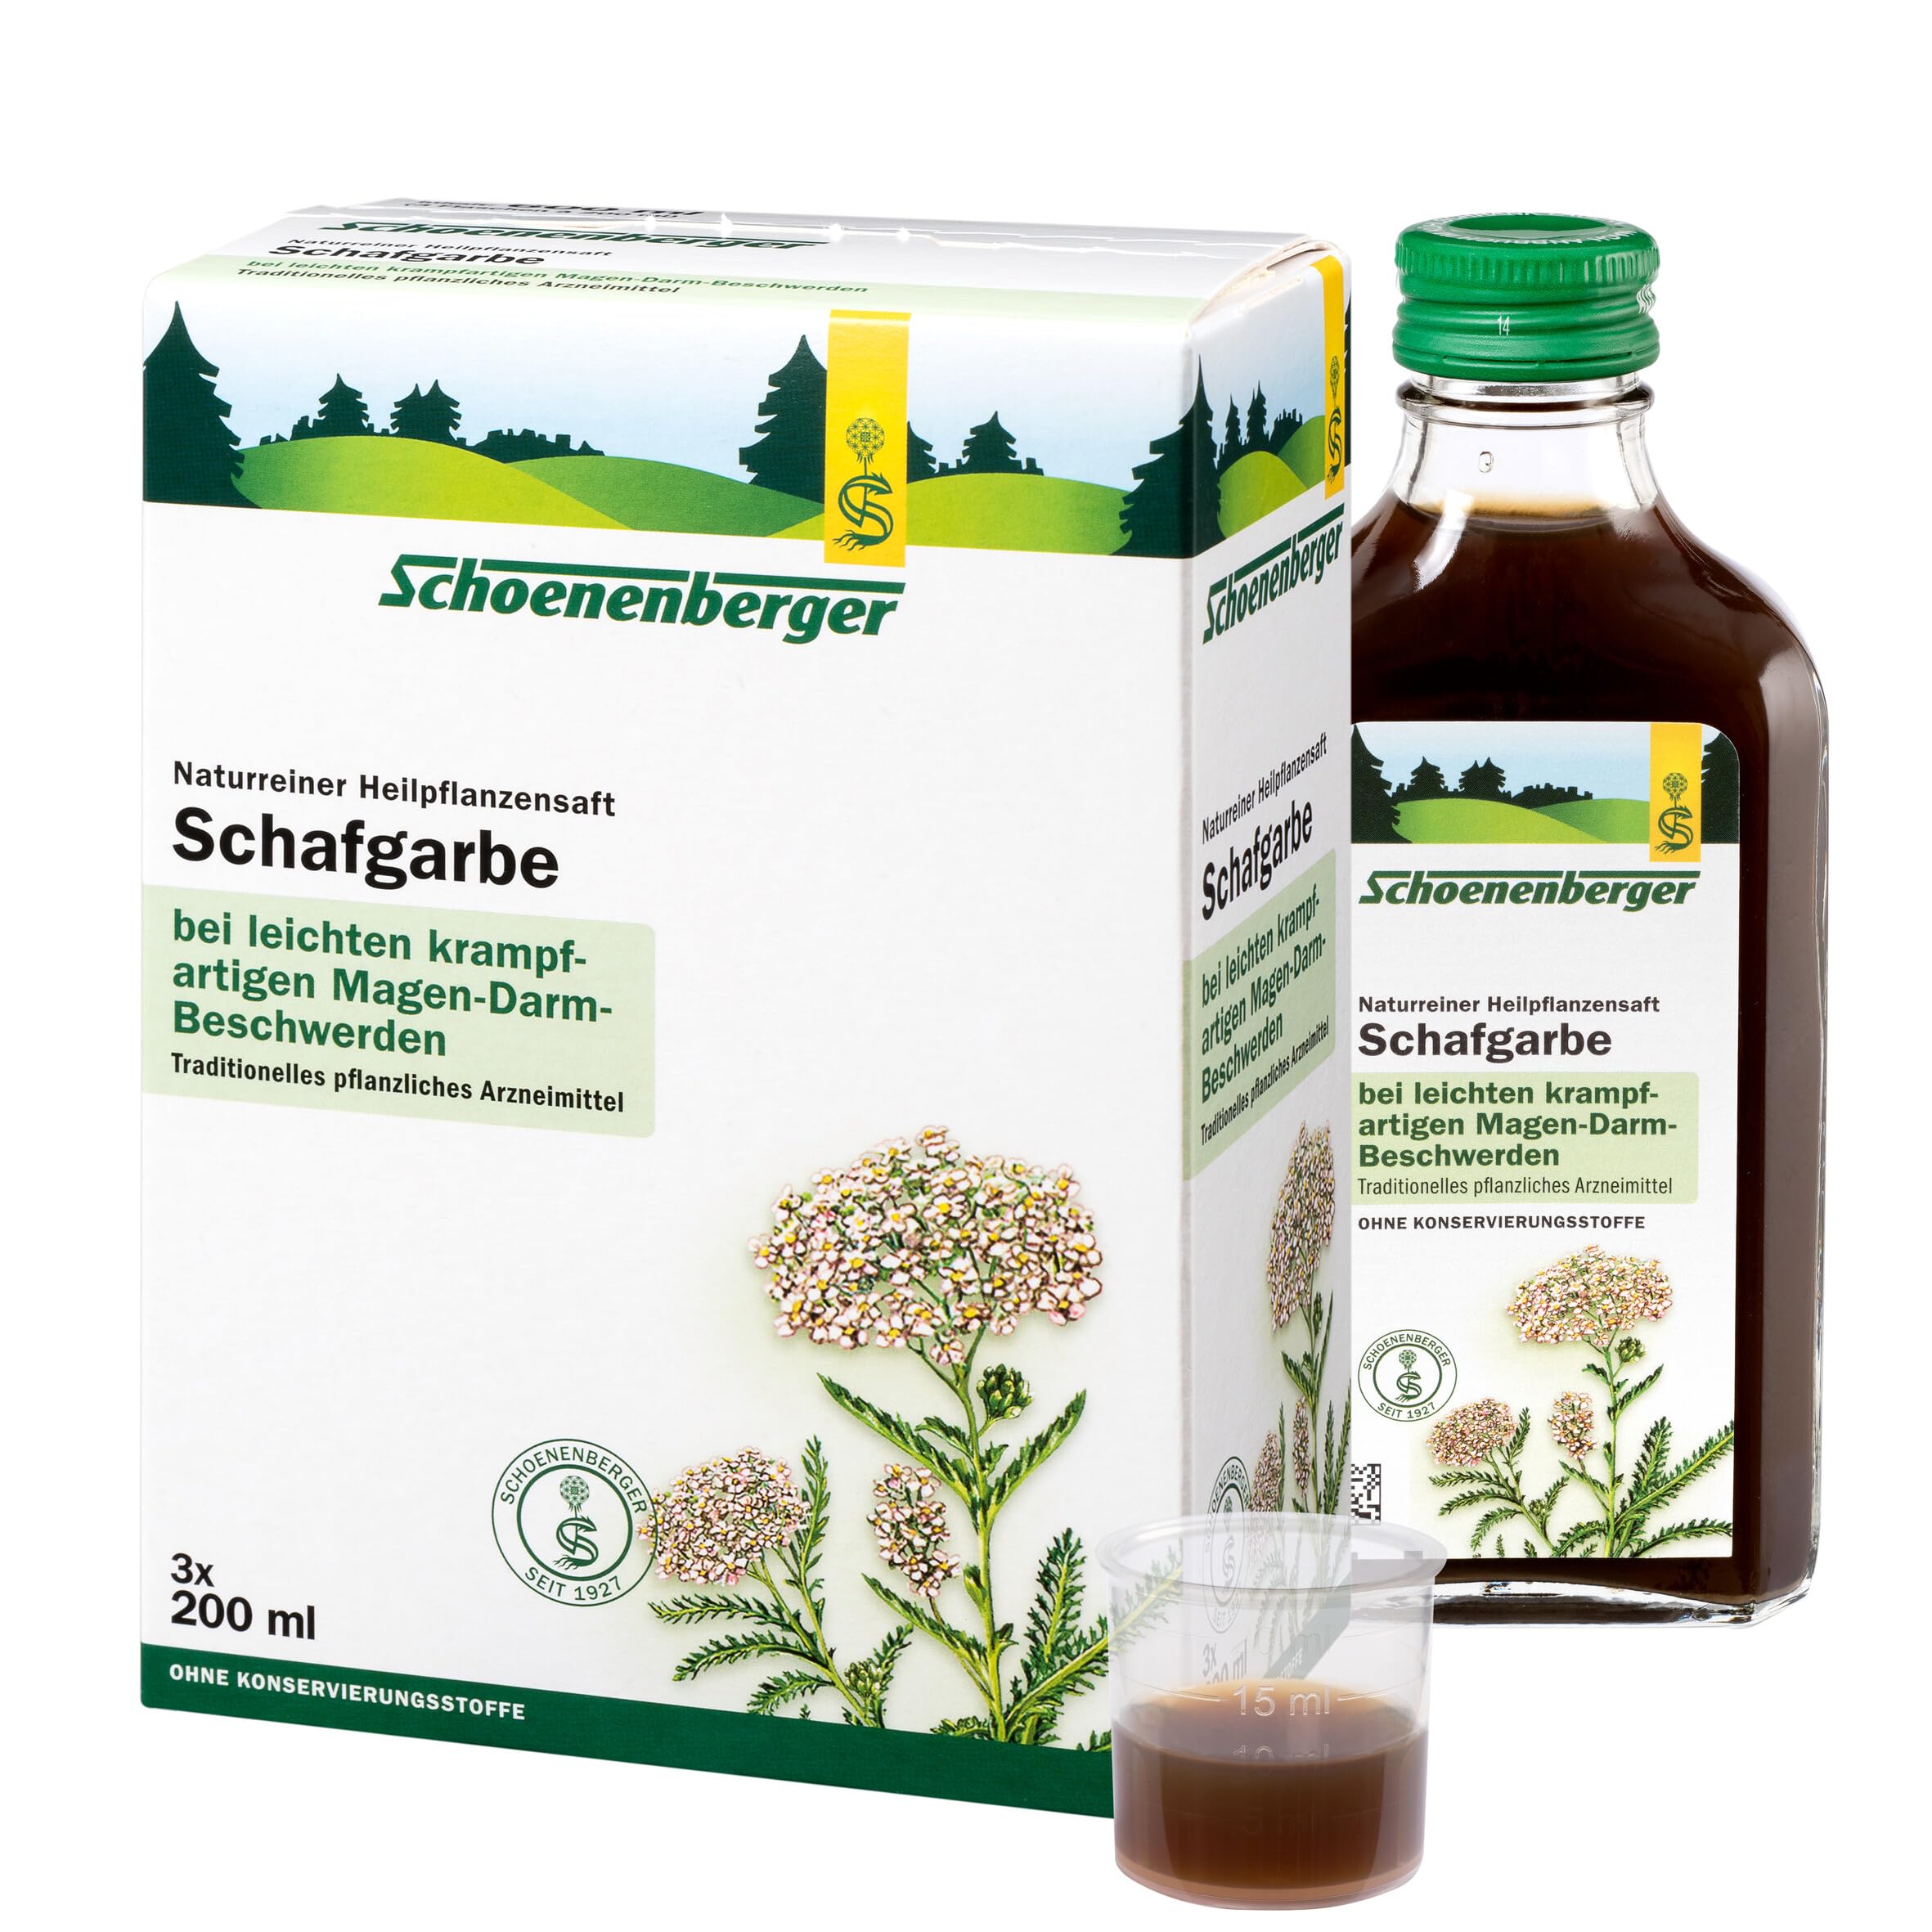 Schoenenberger - Schafgarbe naturreiner Heilpflanzensaft - 3x 200 ml (600 ml) Glasflaschen - freiverkäufliches Arzneimittel - bei leichten krampfartigen Magen-Darm-Beschwerden